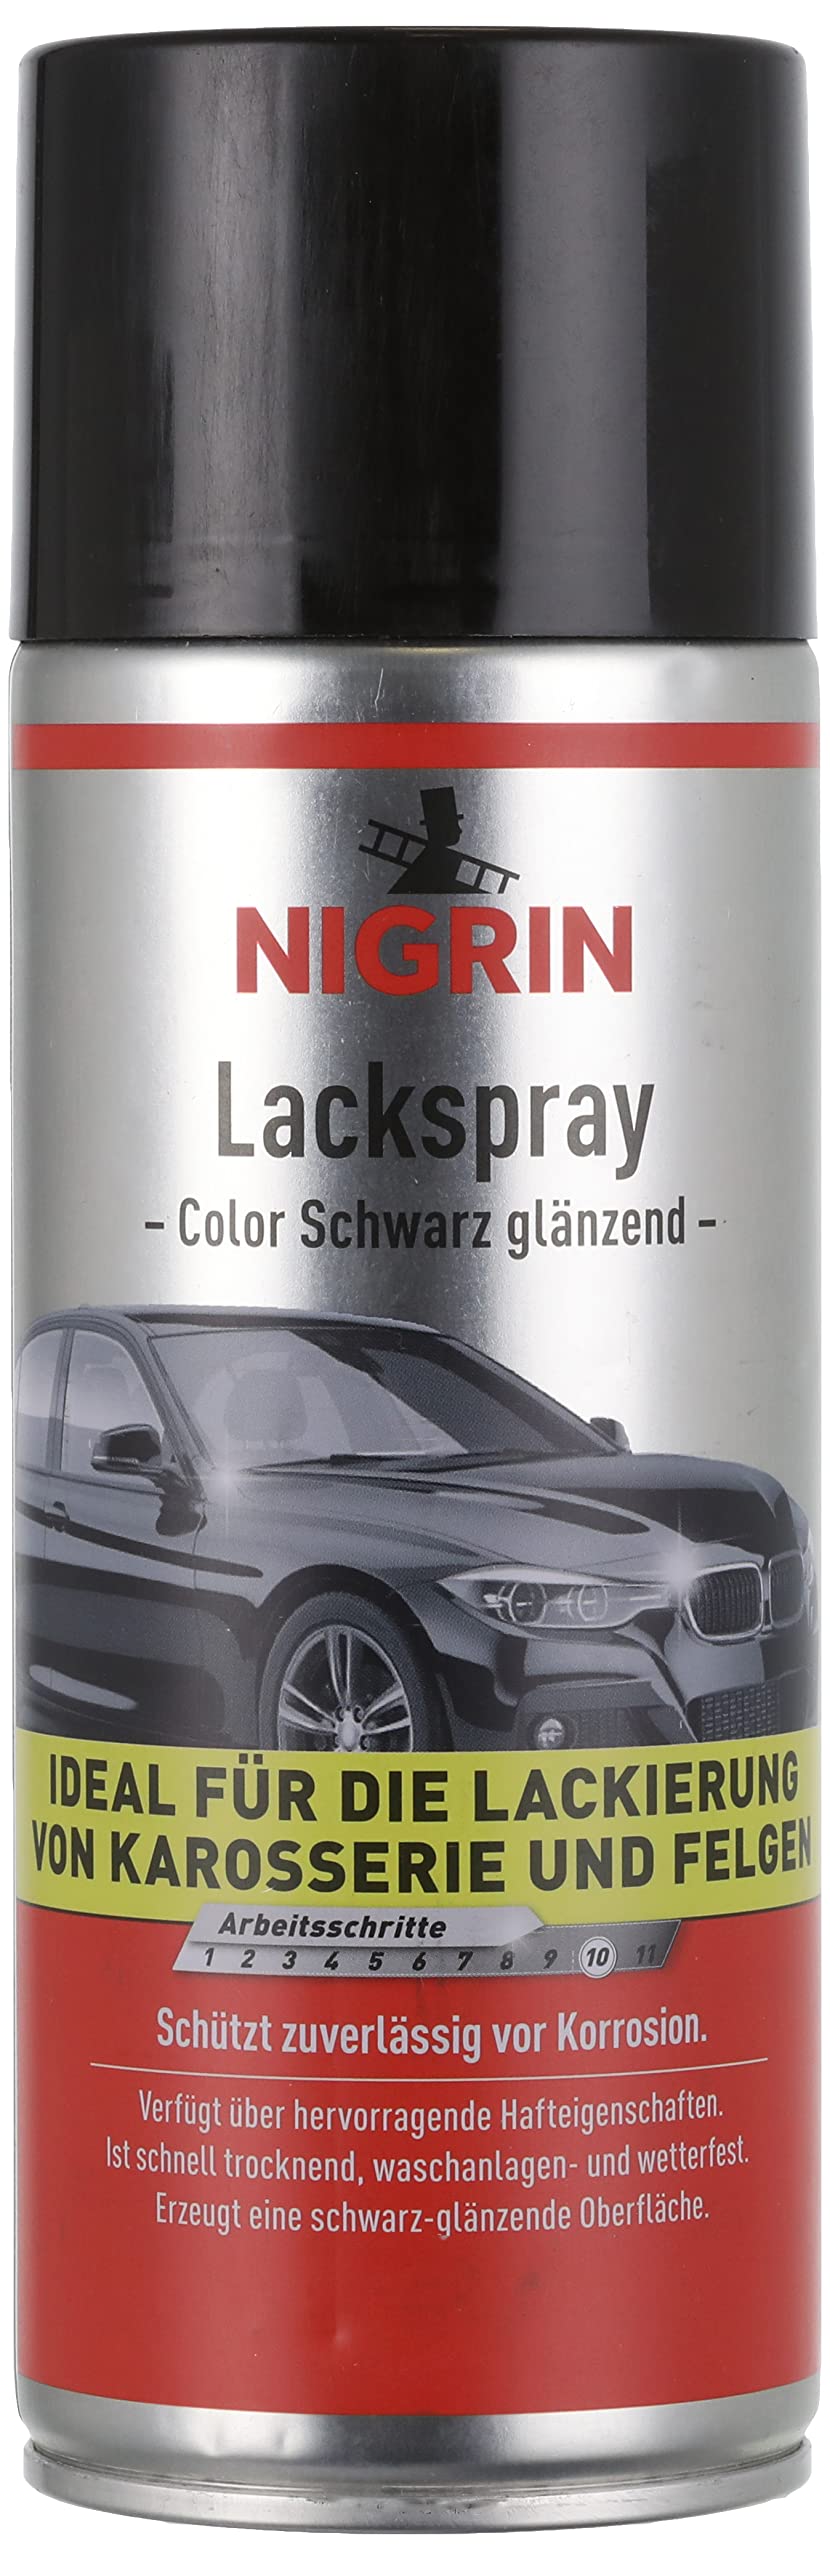 NIGRIN Lackspray, 400 ml, schwarz glänzender Autolack, schützt Felgen und Karosserie vor Rost, schnell trocknend von NIGRIN